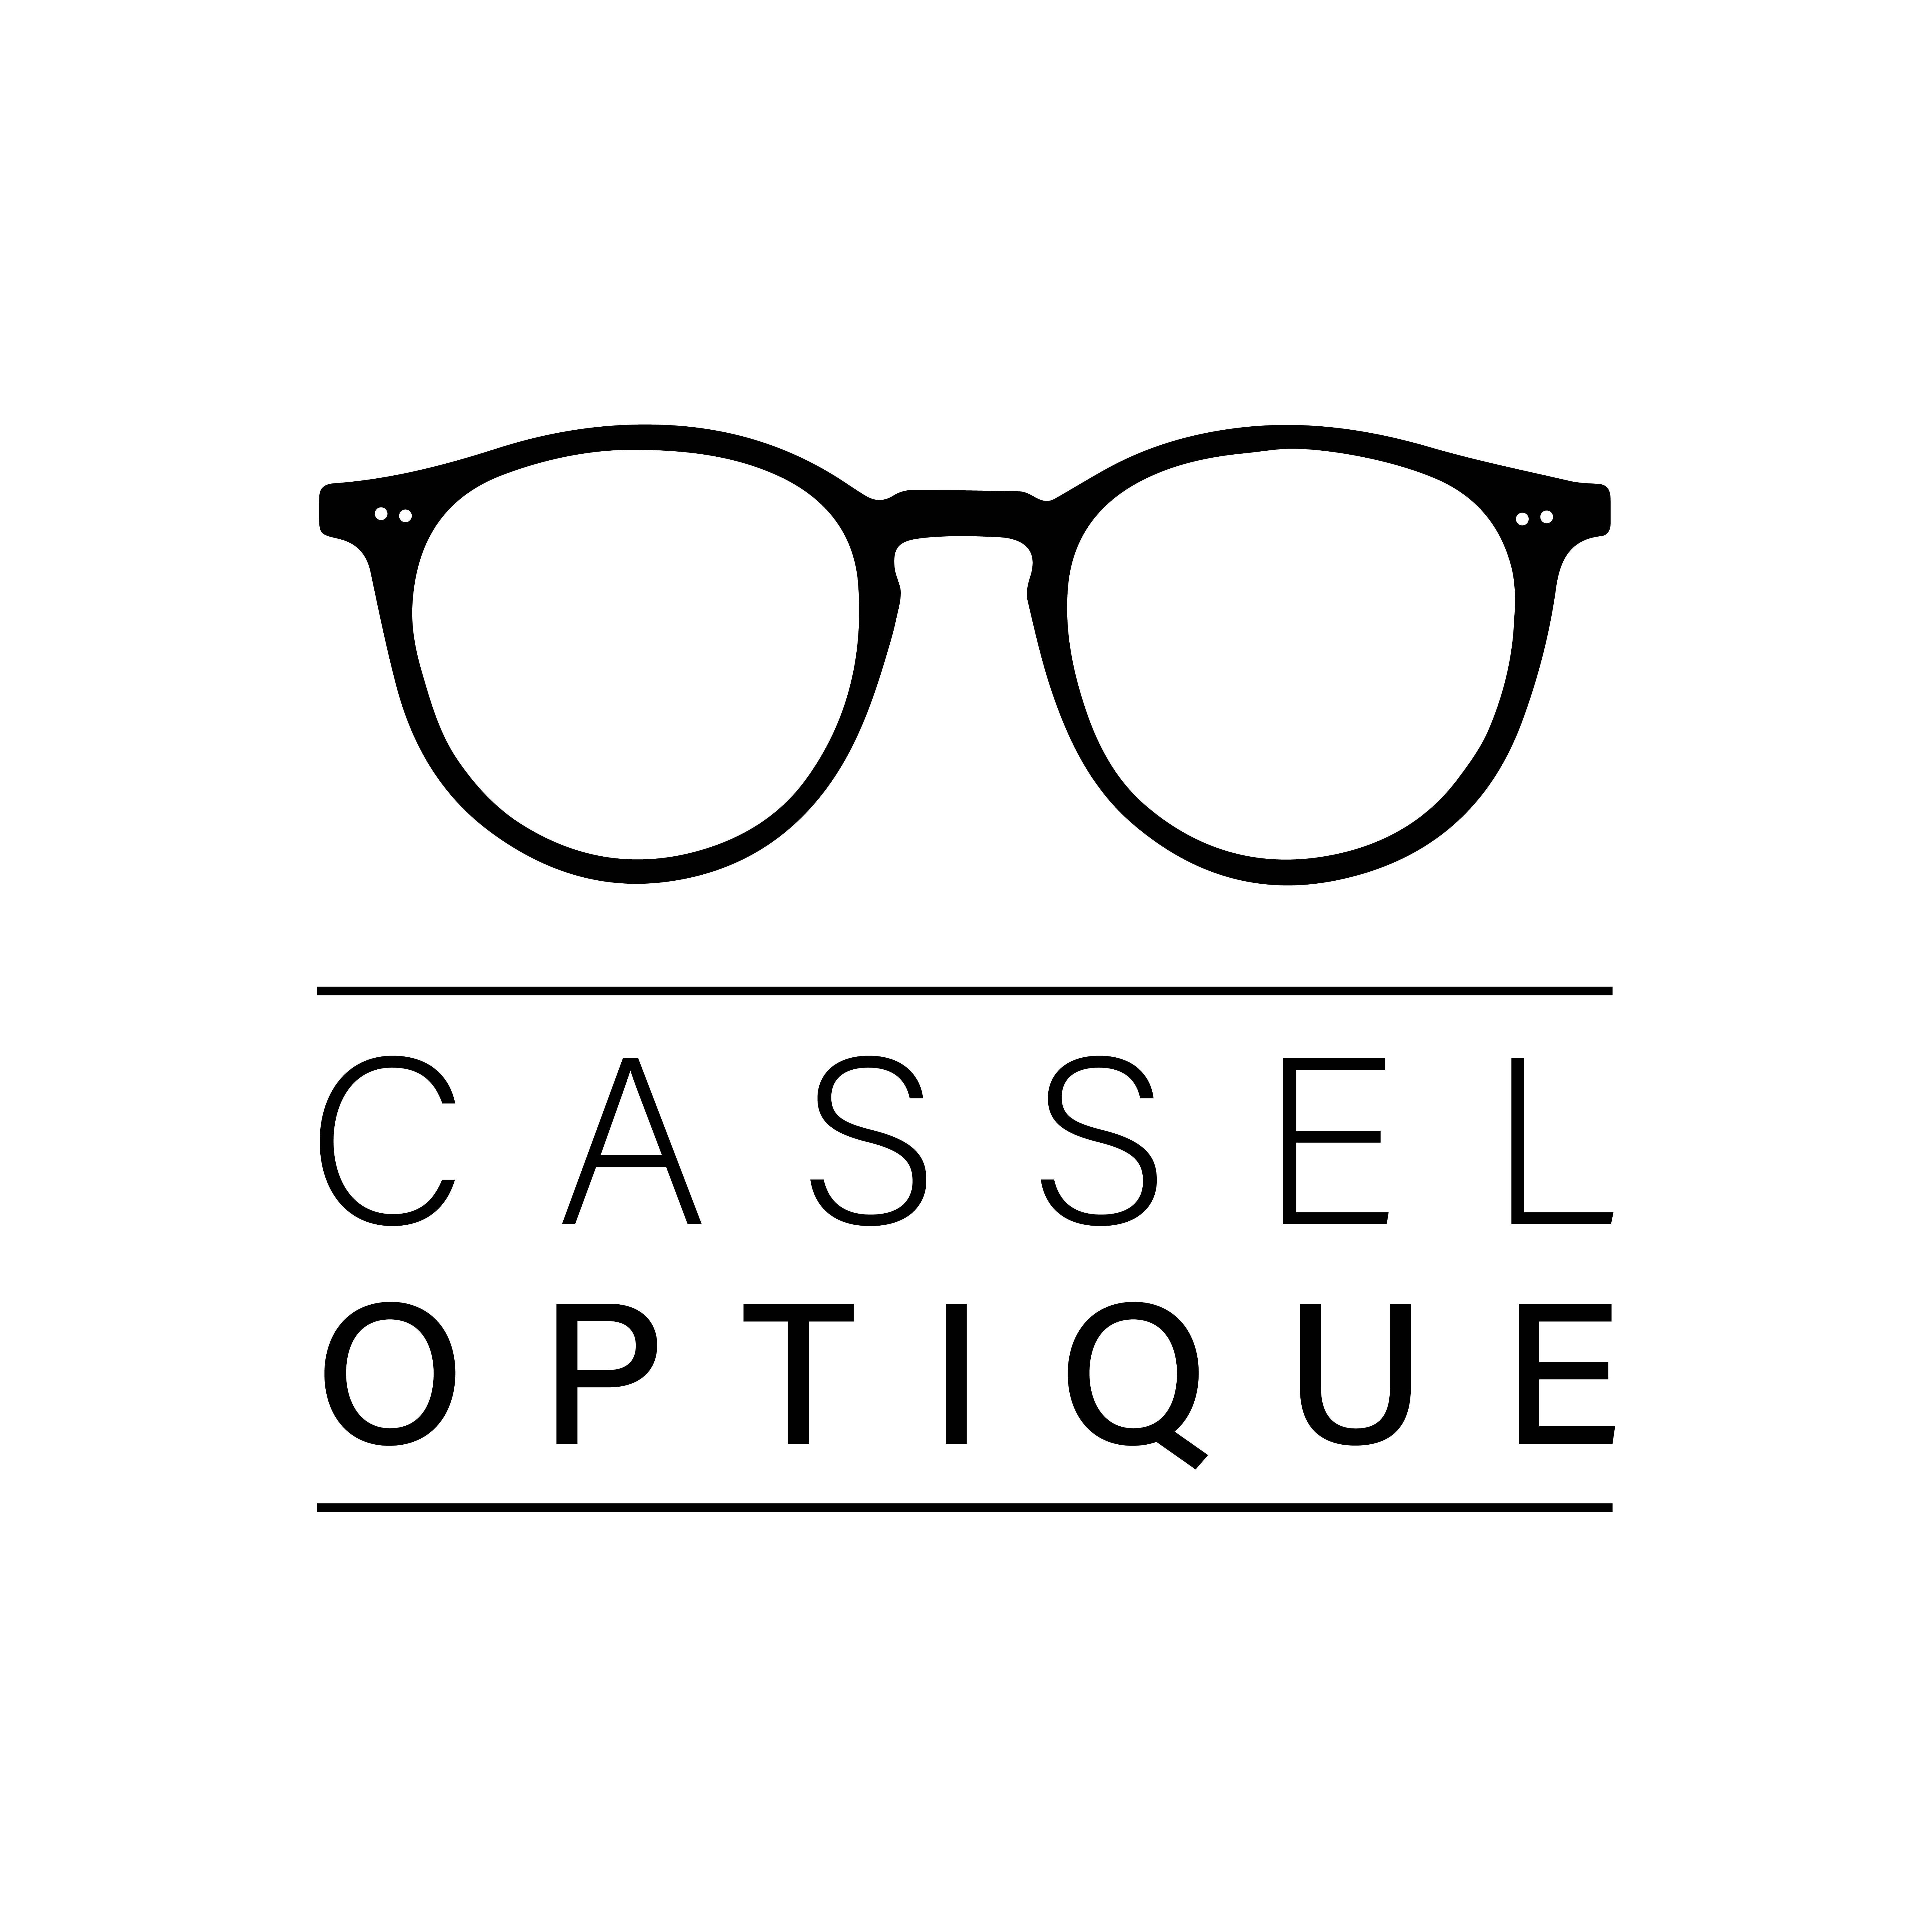 Cassel Optique